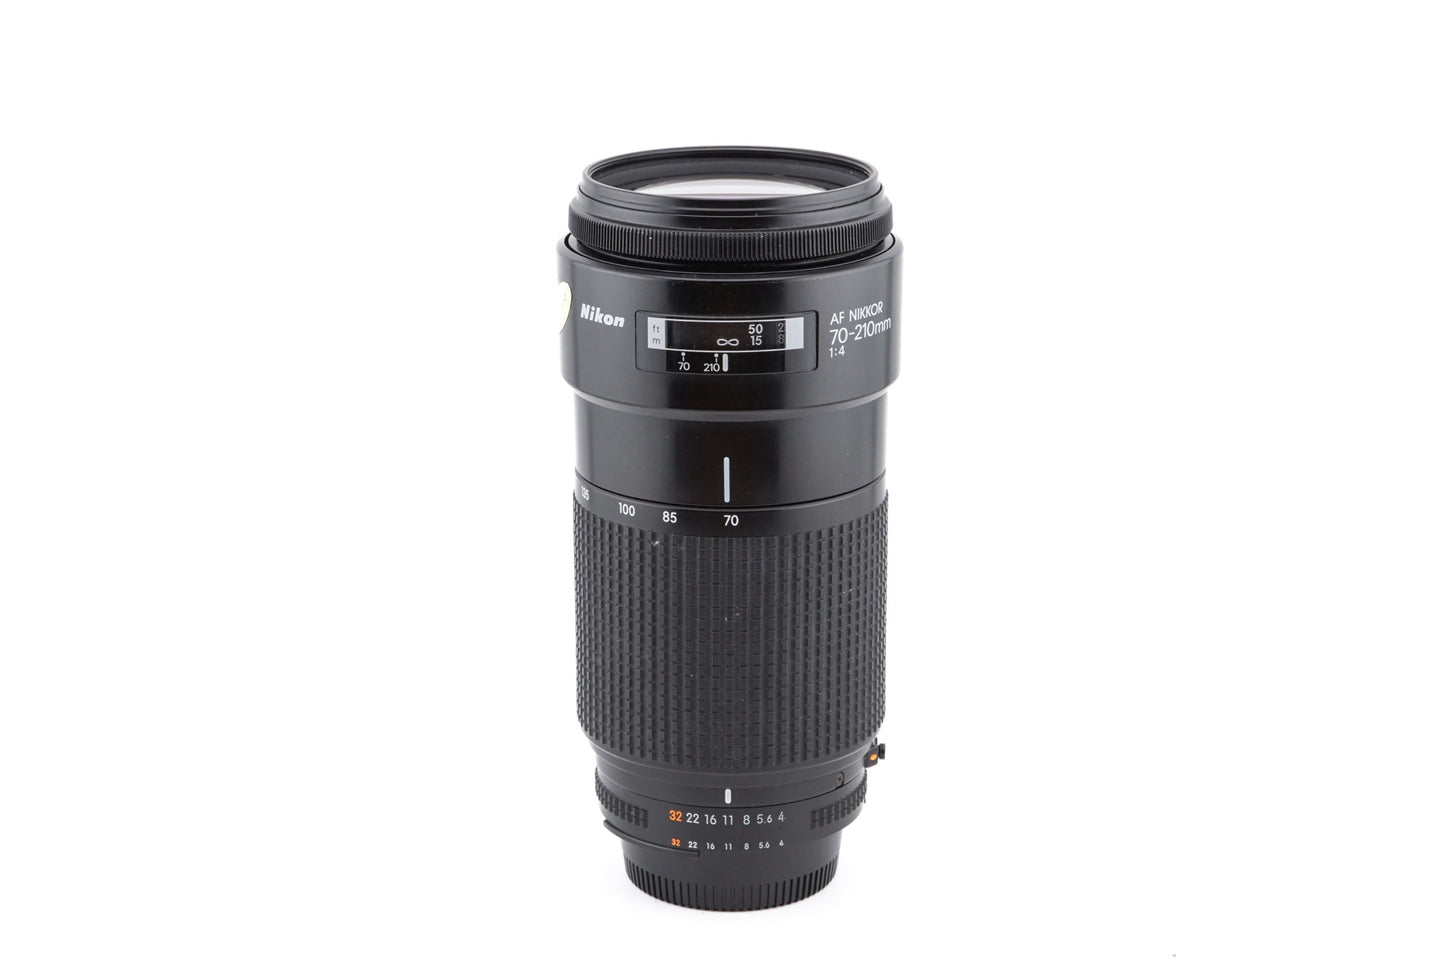 Nikon 70-210mm f4 AF Nikkor - Lens